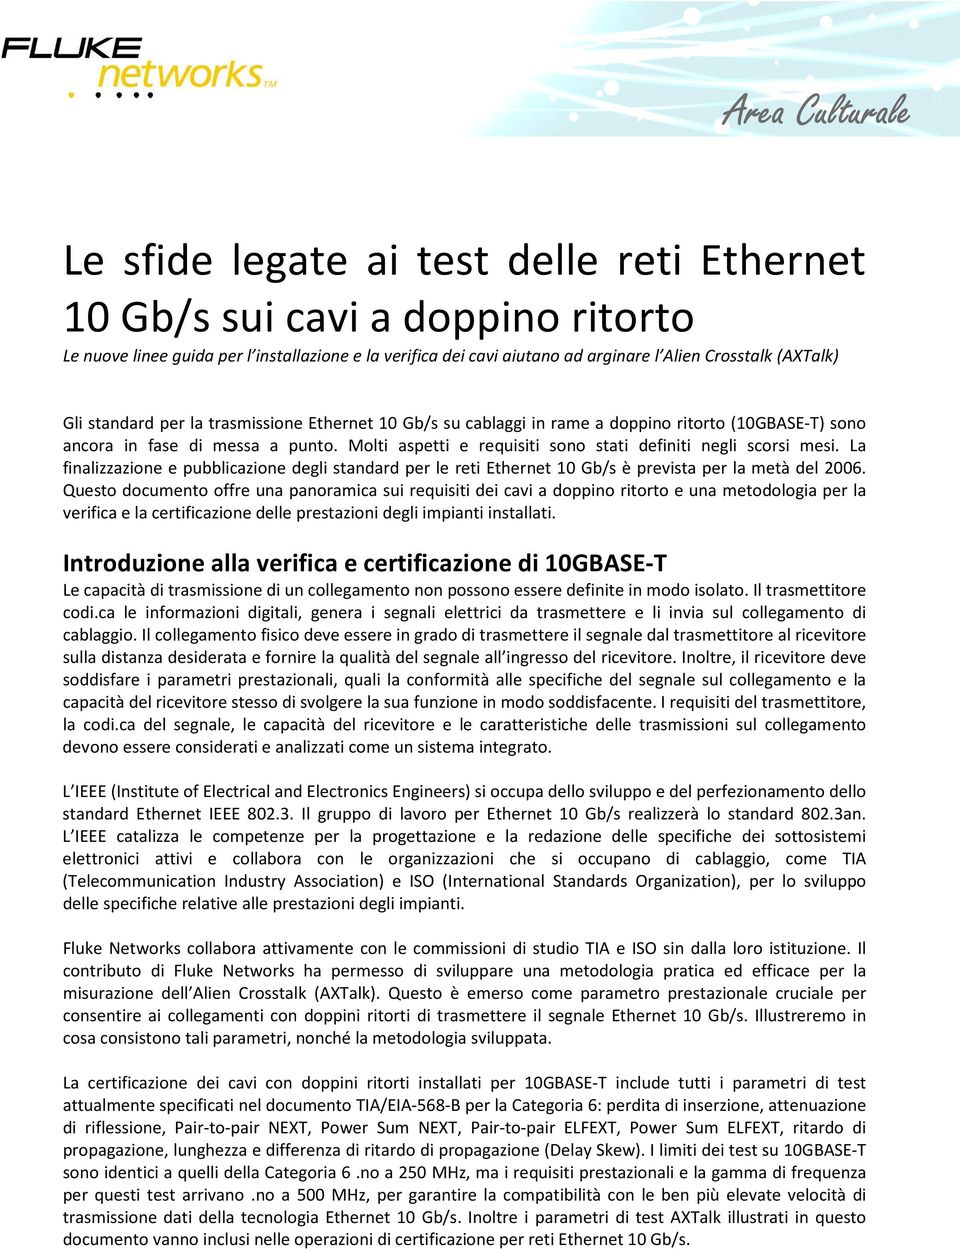 La finalizzazione e pubblicazione degli standard per le reti Ethernet 10 Gb/s è prevista per la metà del 2006.